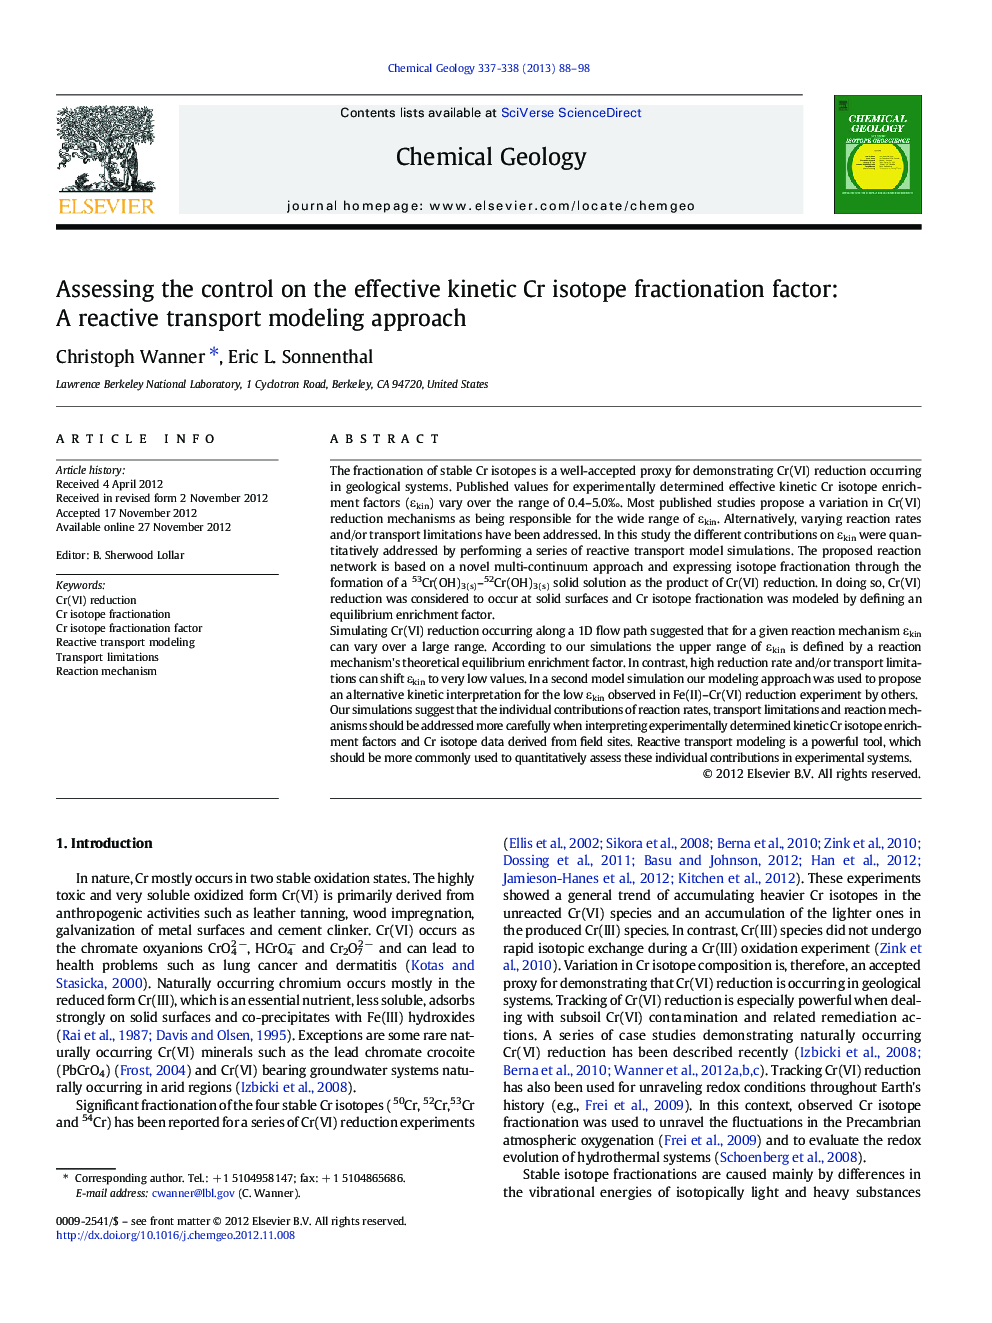 ارزیابی کنترل فاکتور کسر ایزوتوپ سینتیک سینتیک: یک روش مدل سازی حمل و نقل واکنشی 